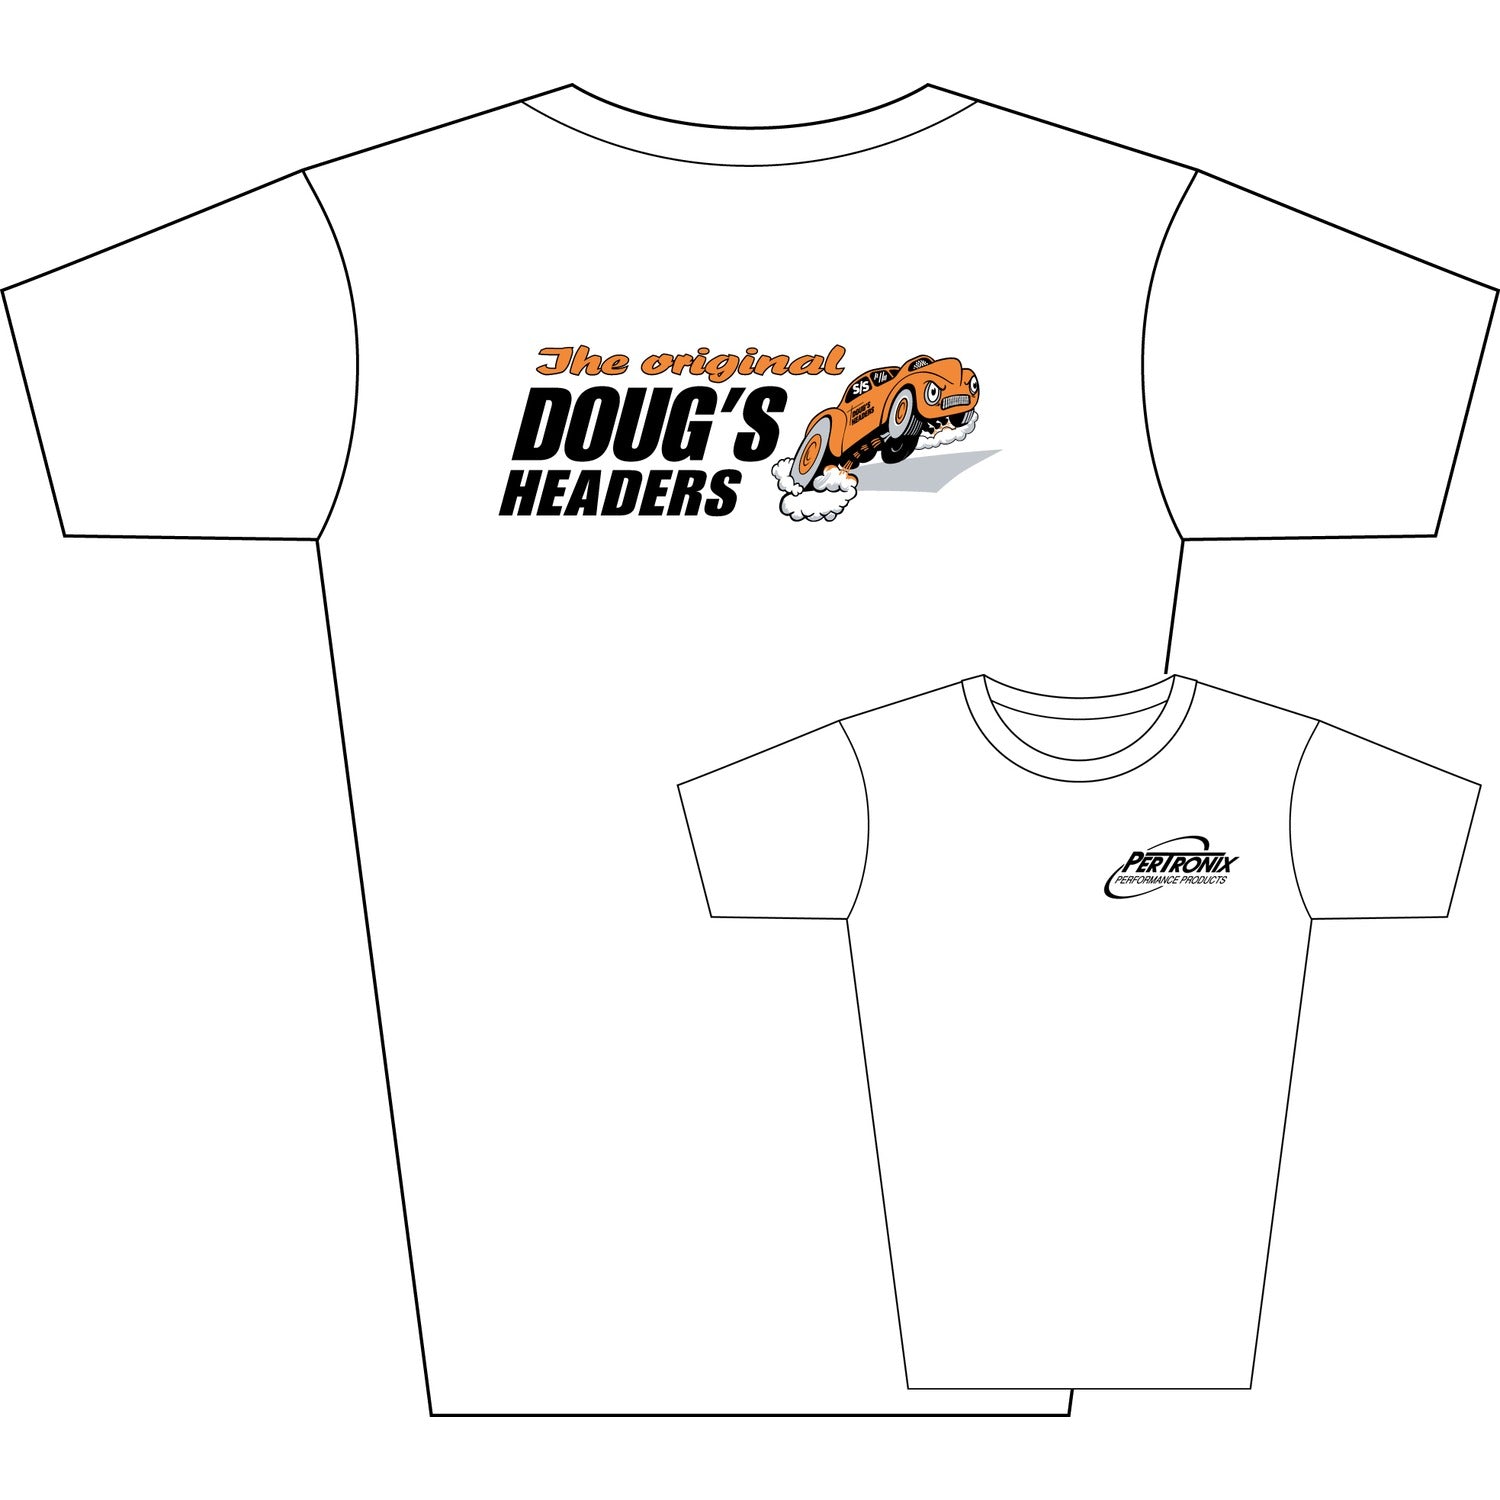 Doug's Headers T-Shirt TS105